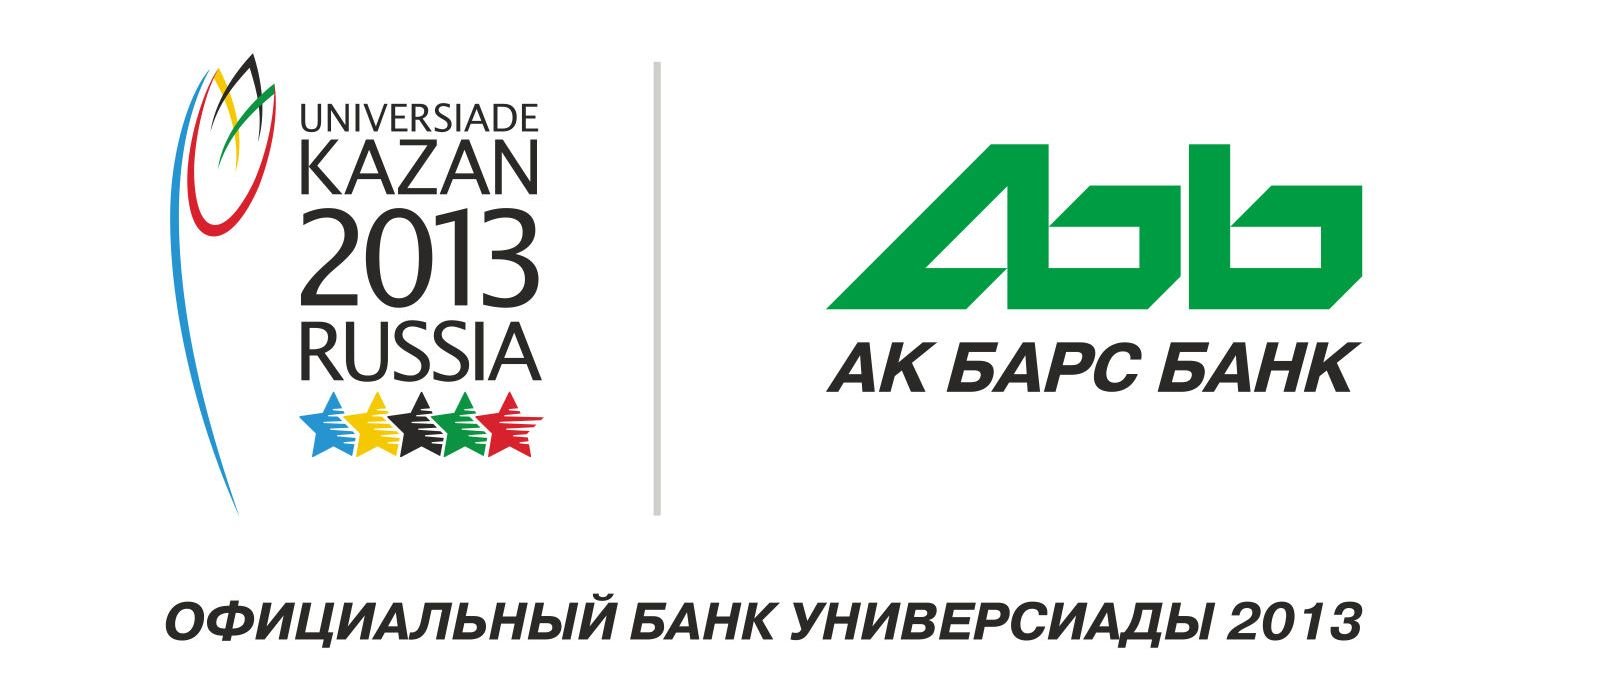 Ак барс доллар купить сегодня. АК Барс банк логотип. Старый логотип АК Барс банка. Банк АК Барс в Новосибирске. АК Барс банк Саратов.